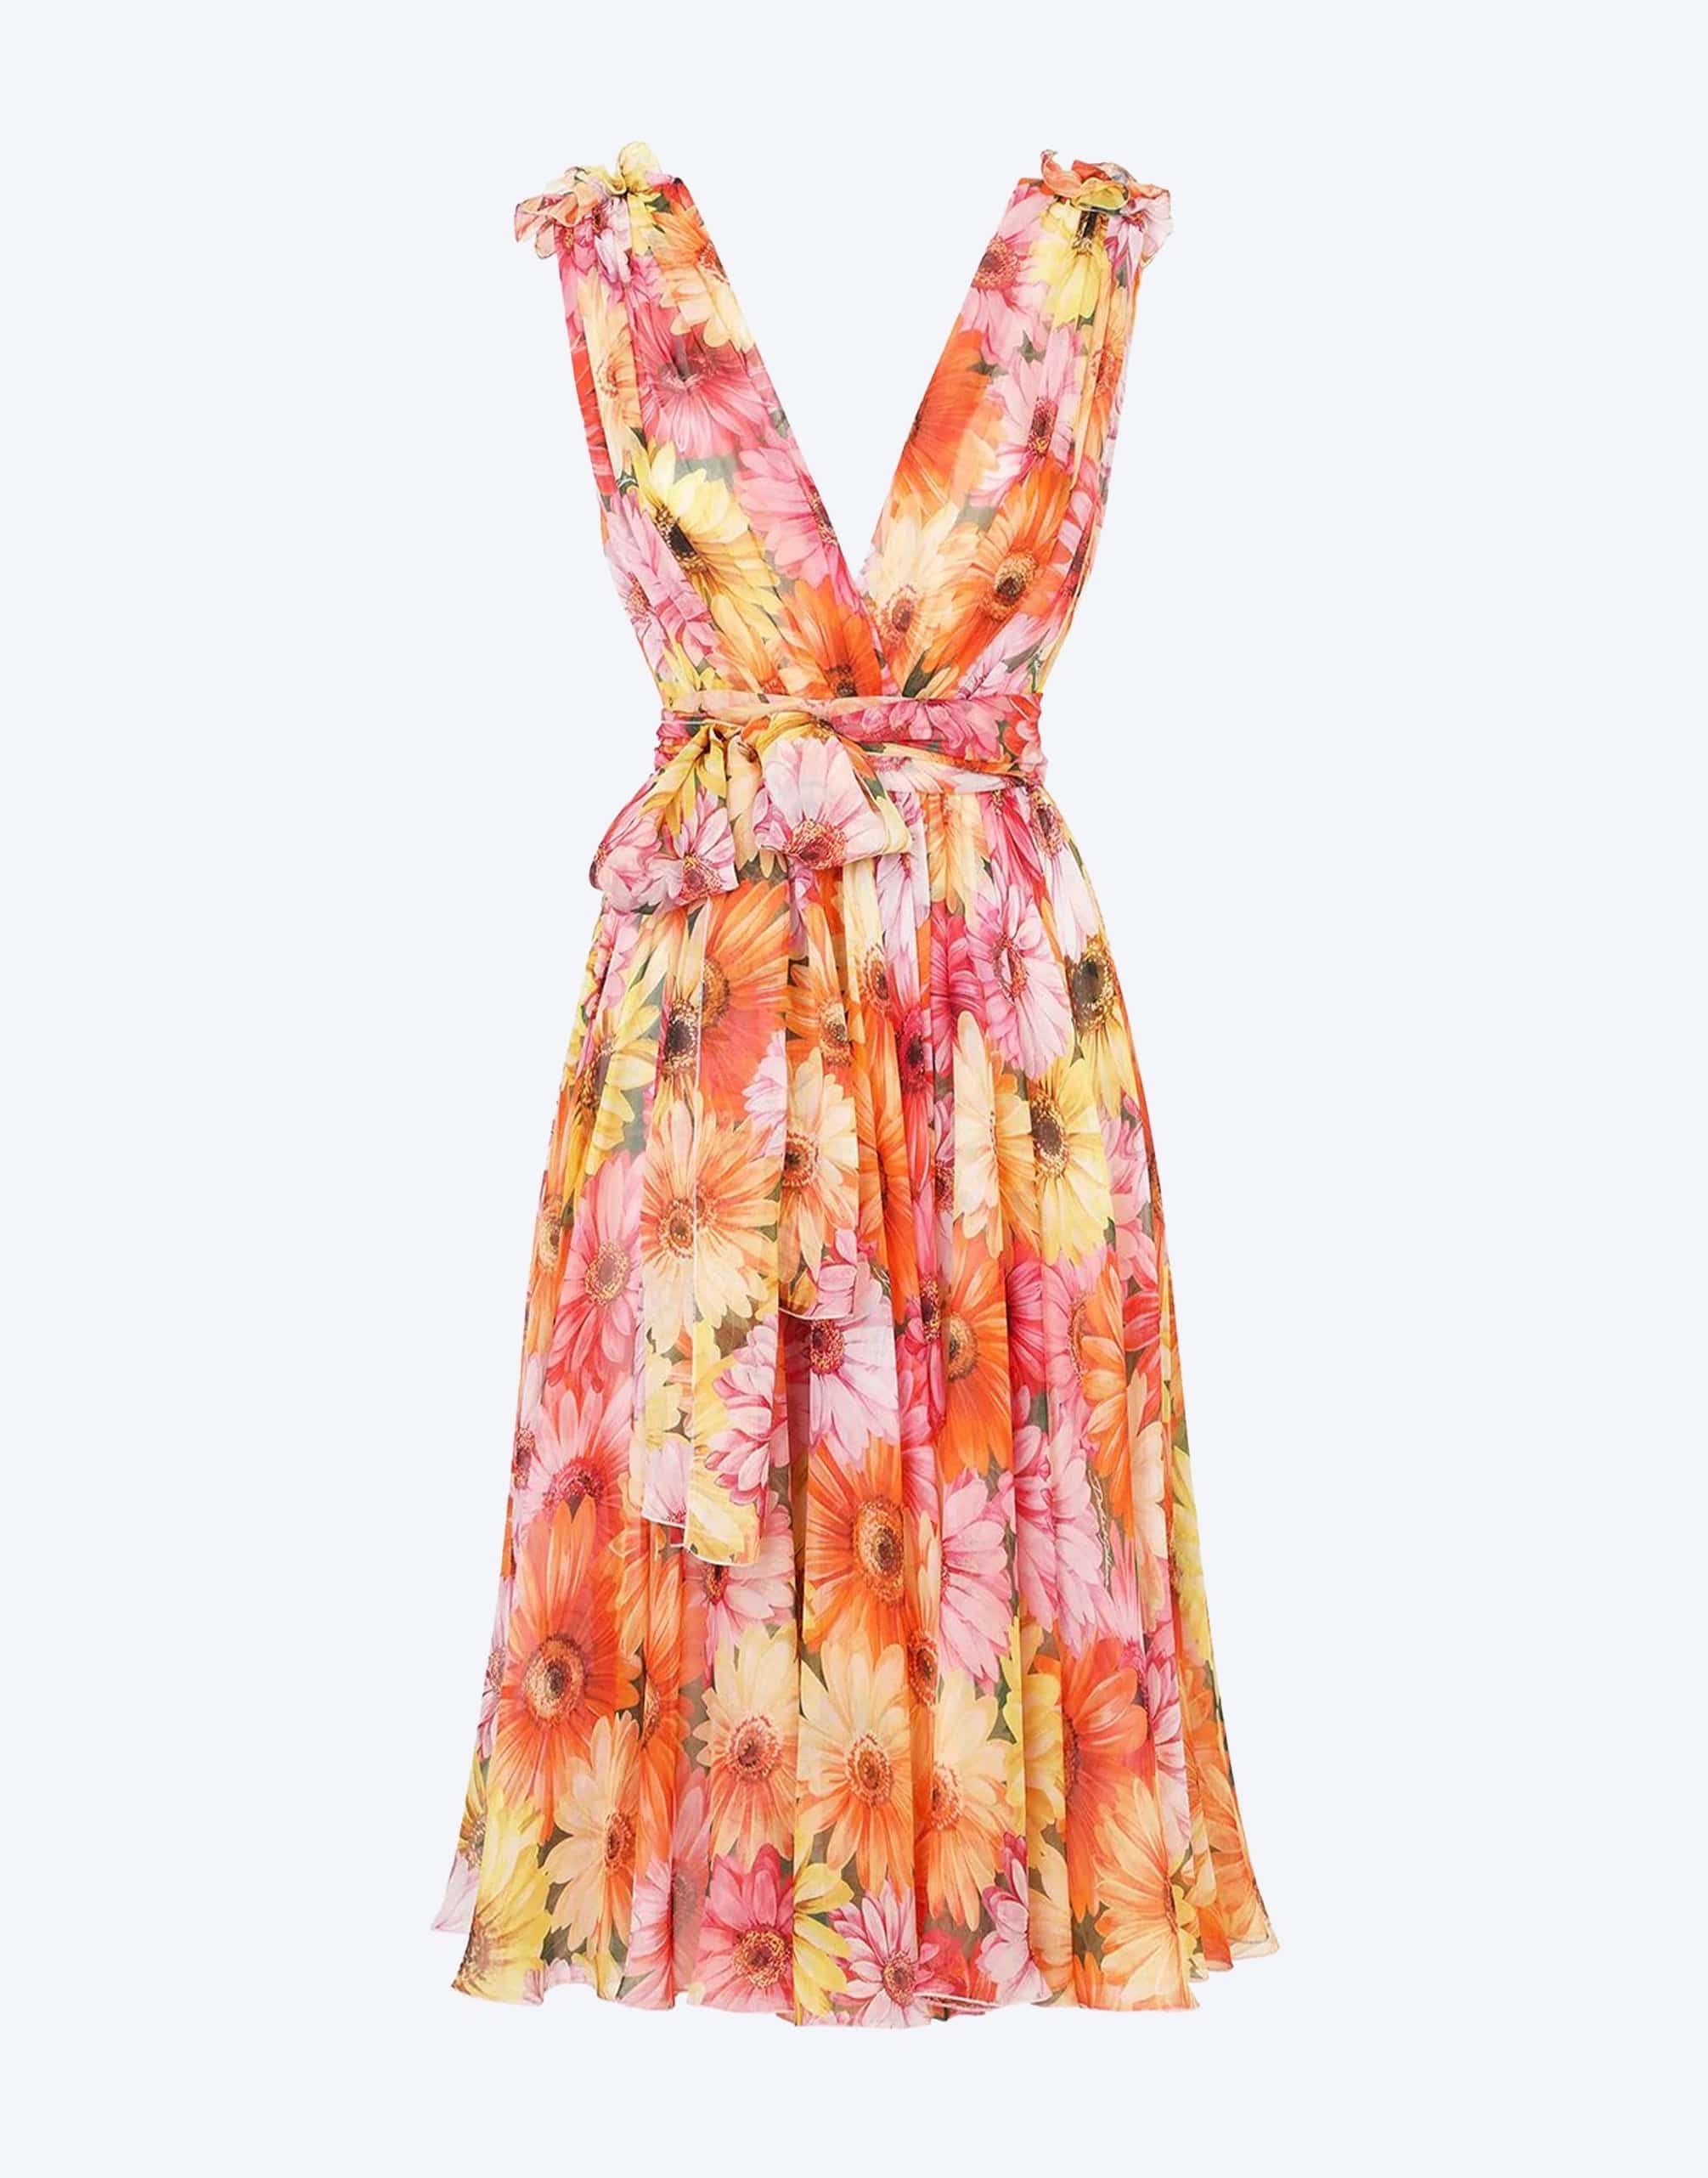 Dolce & Gabbana Daisy Print Chiffon Dress